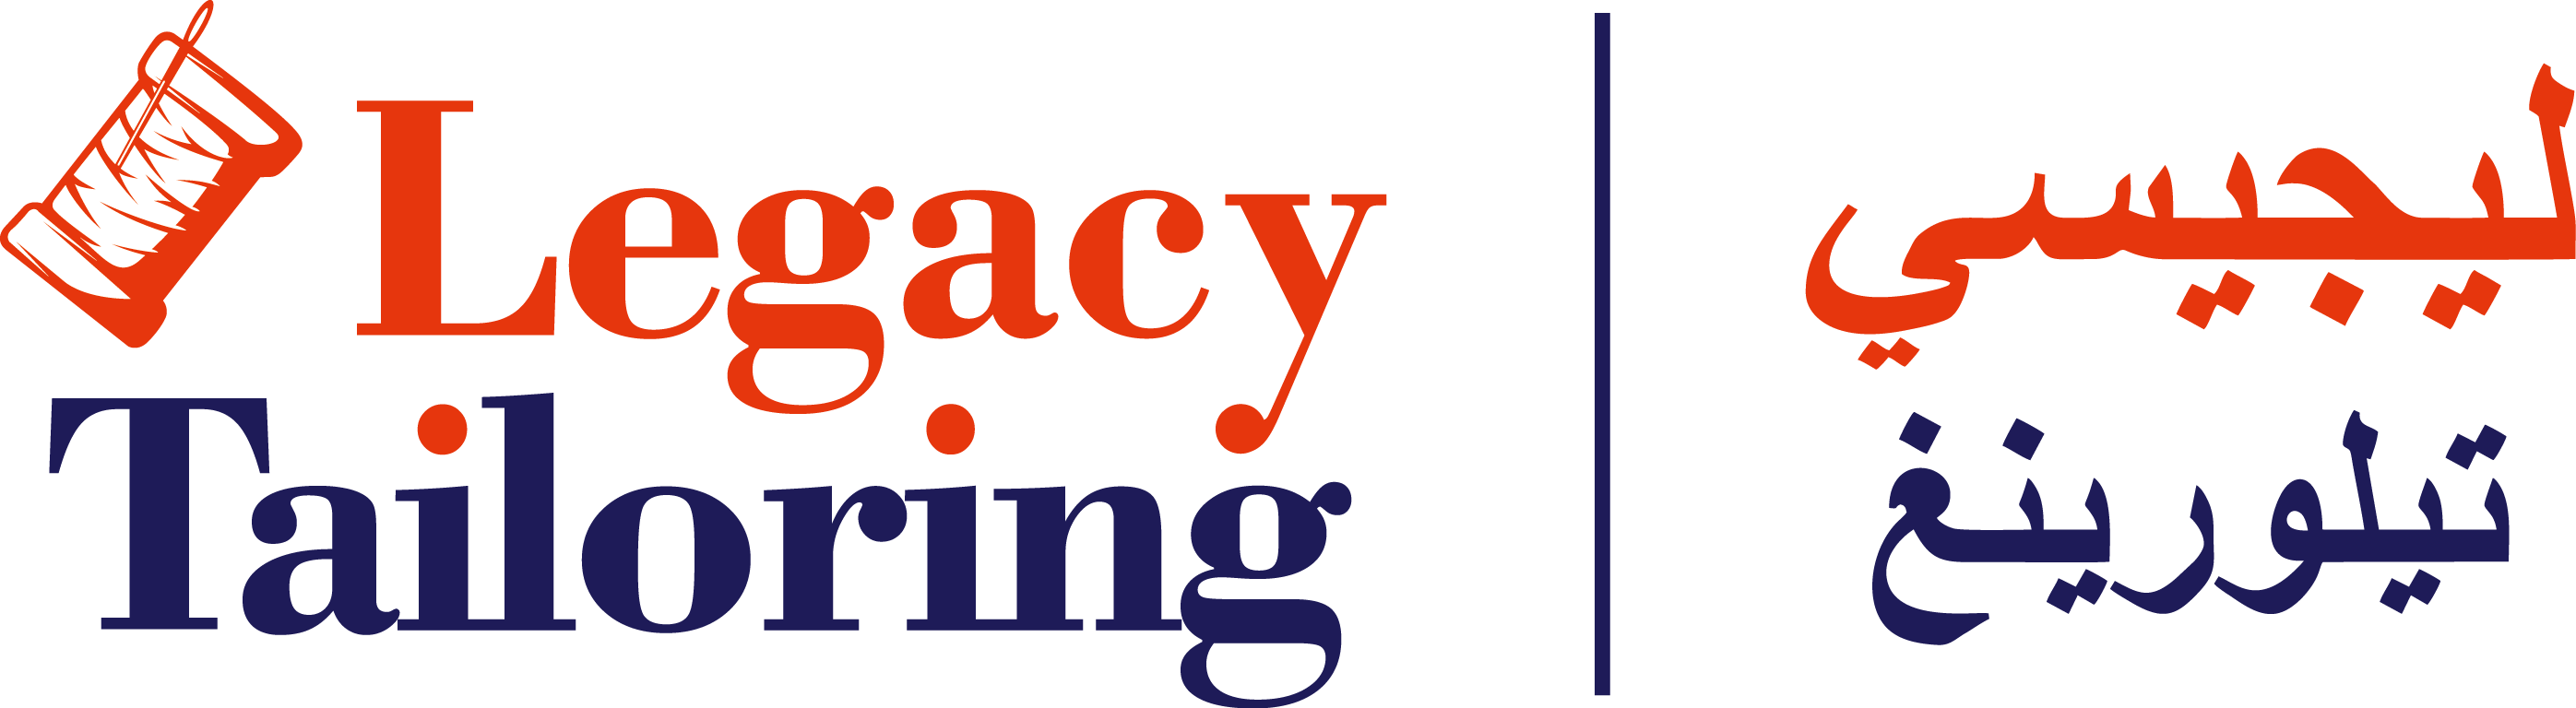 Legacy Tailoring logo